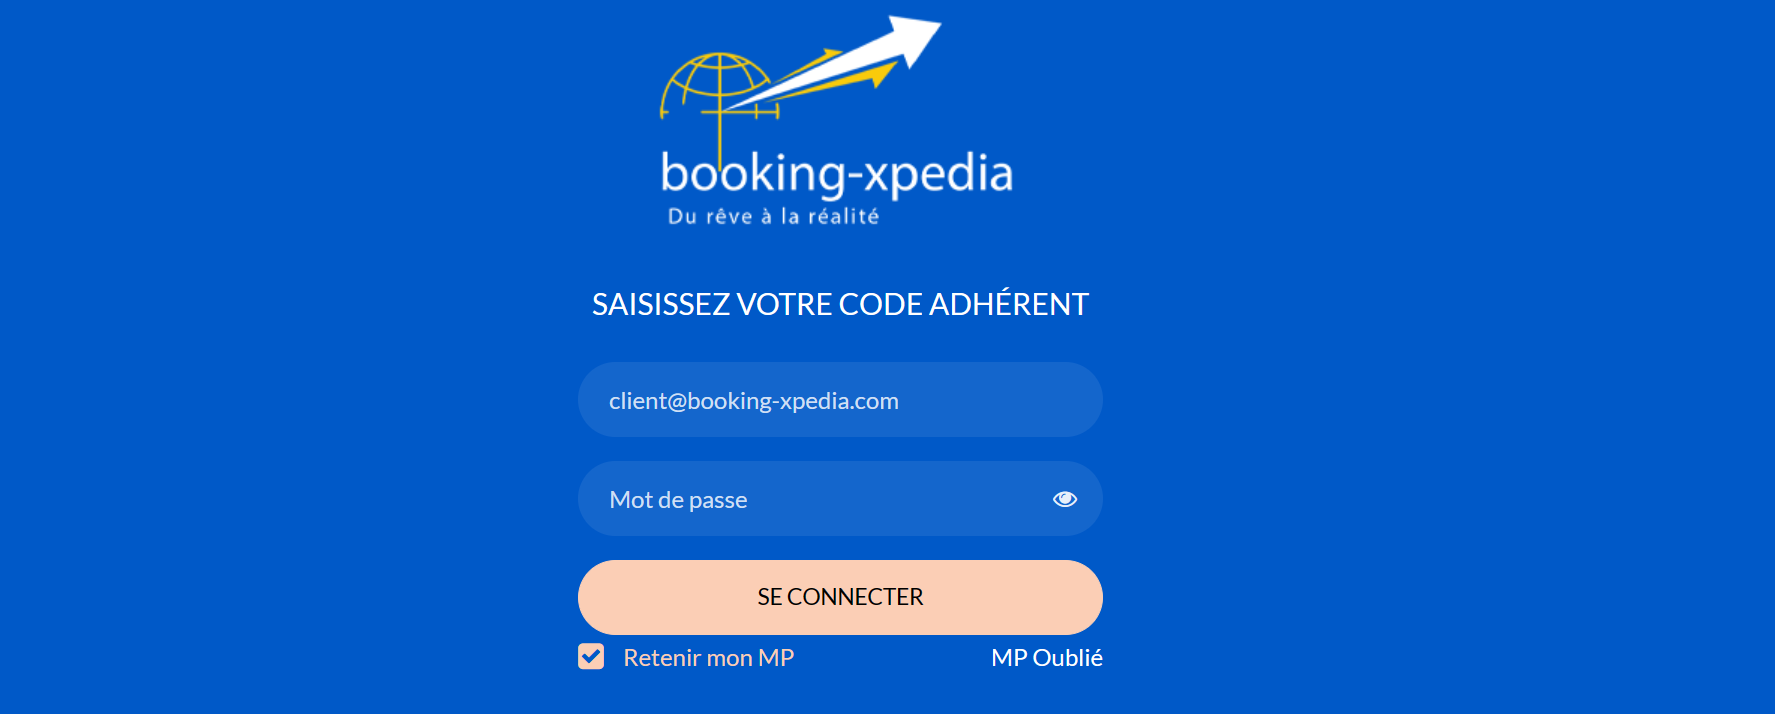 Interface suspecte du site Booking-Xpedia prétendant offrir des voyages à bas prix